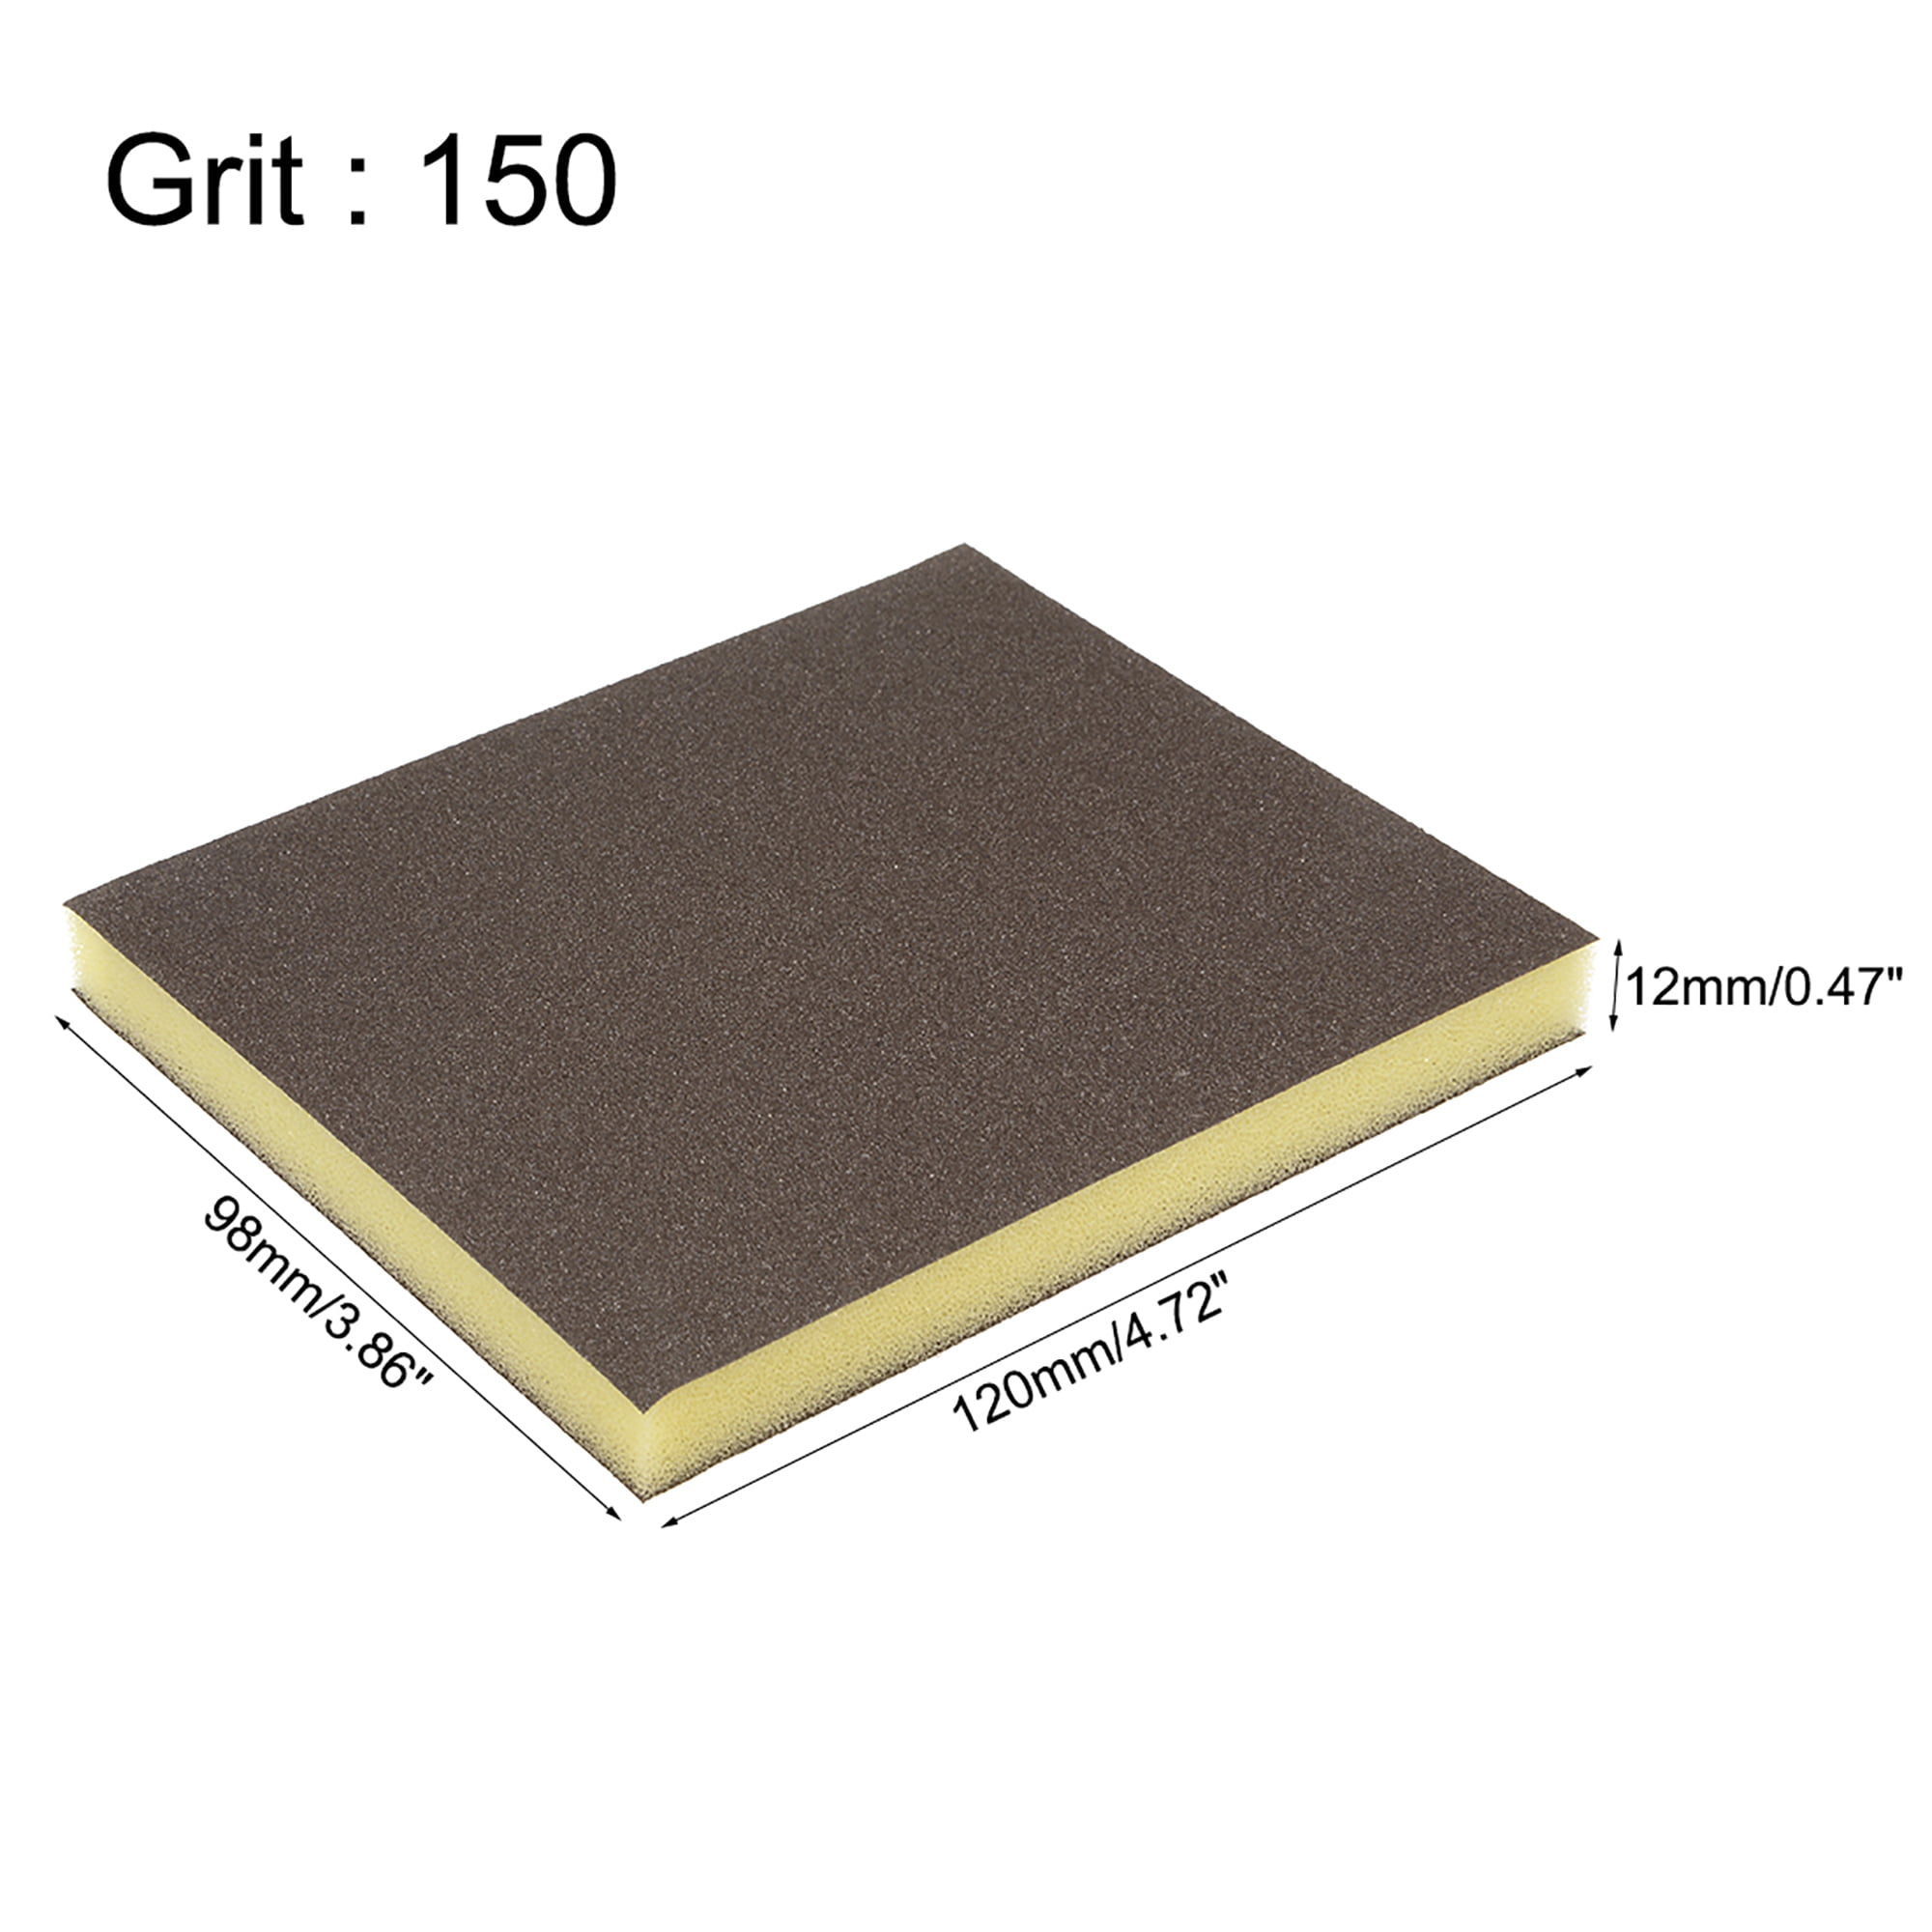 4.72"x3.86" x 0.47" 4pcs Details about   Sanding Sponge Medium Grit 150 Grit Sanding Block Pad 